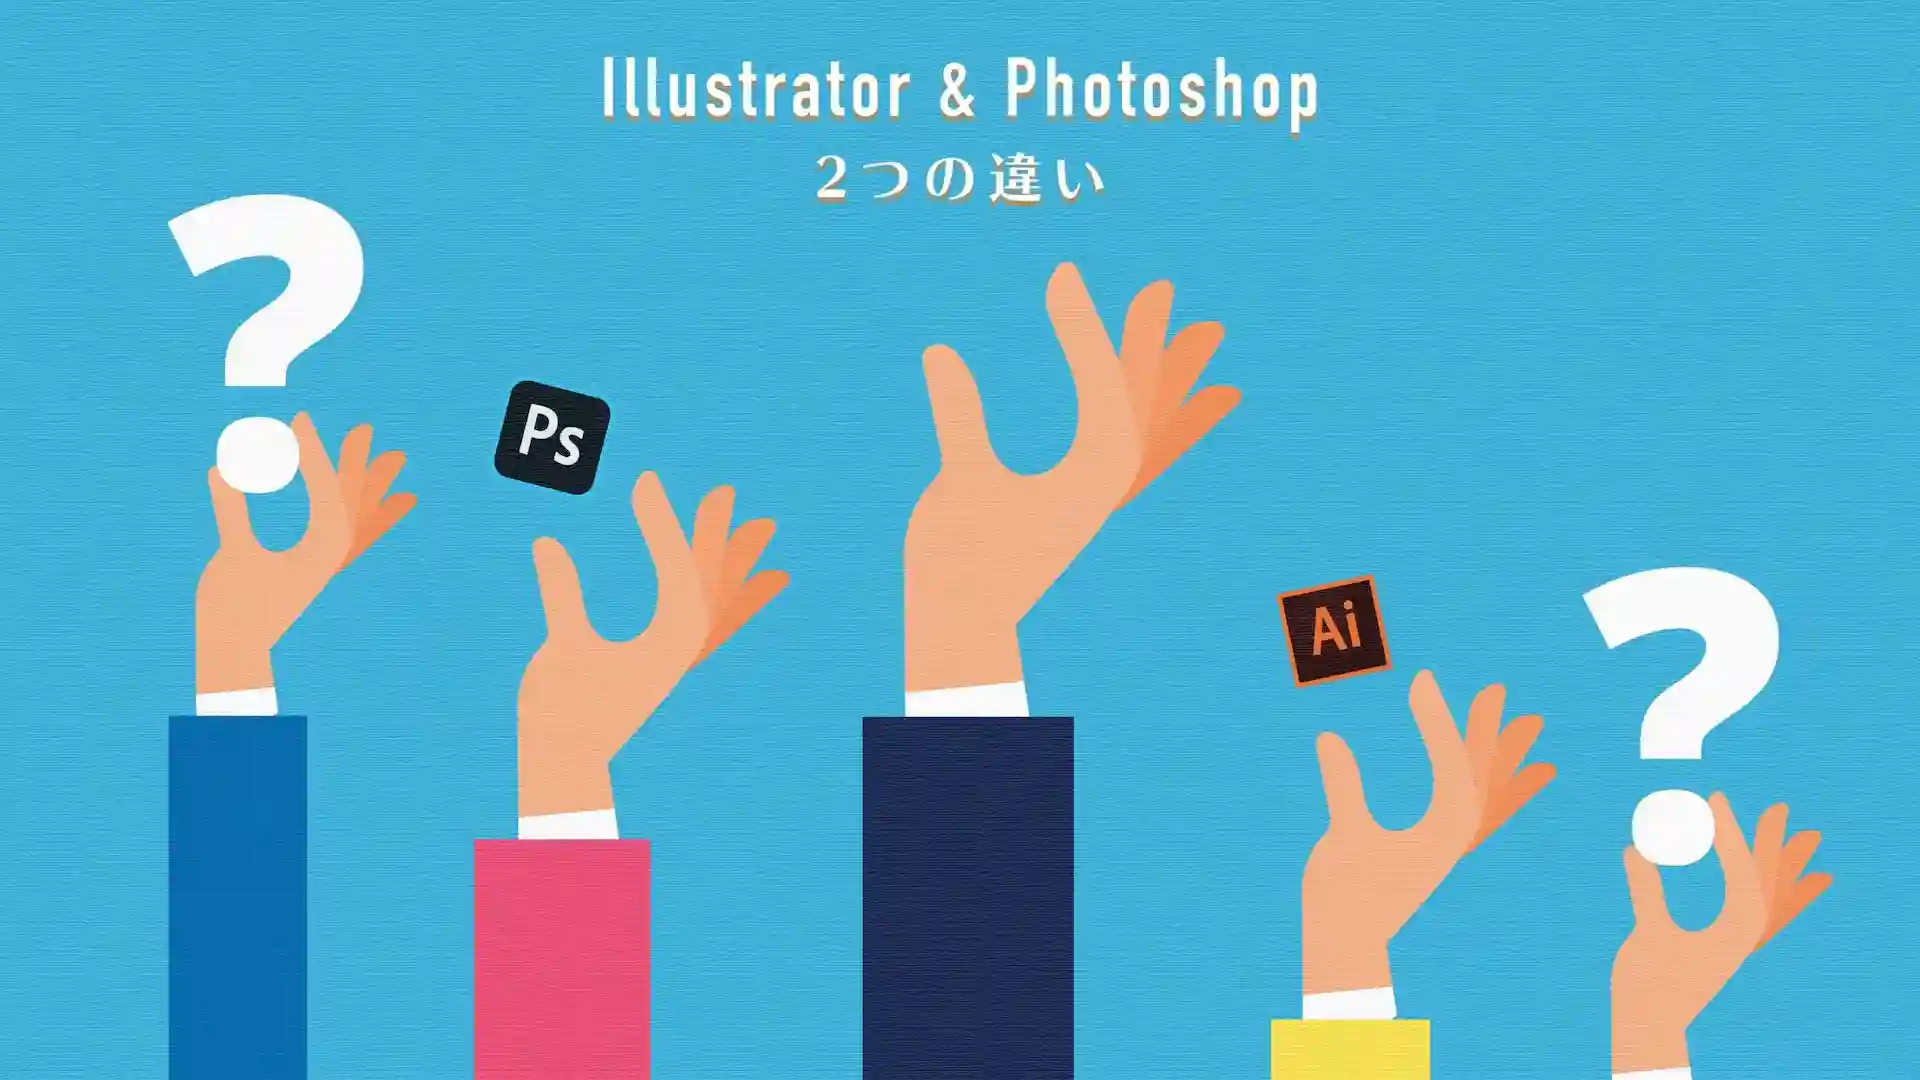 IllustratorとPhotoshopの違いを12の実例で比較。安く使えるセットプランも紹介。